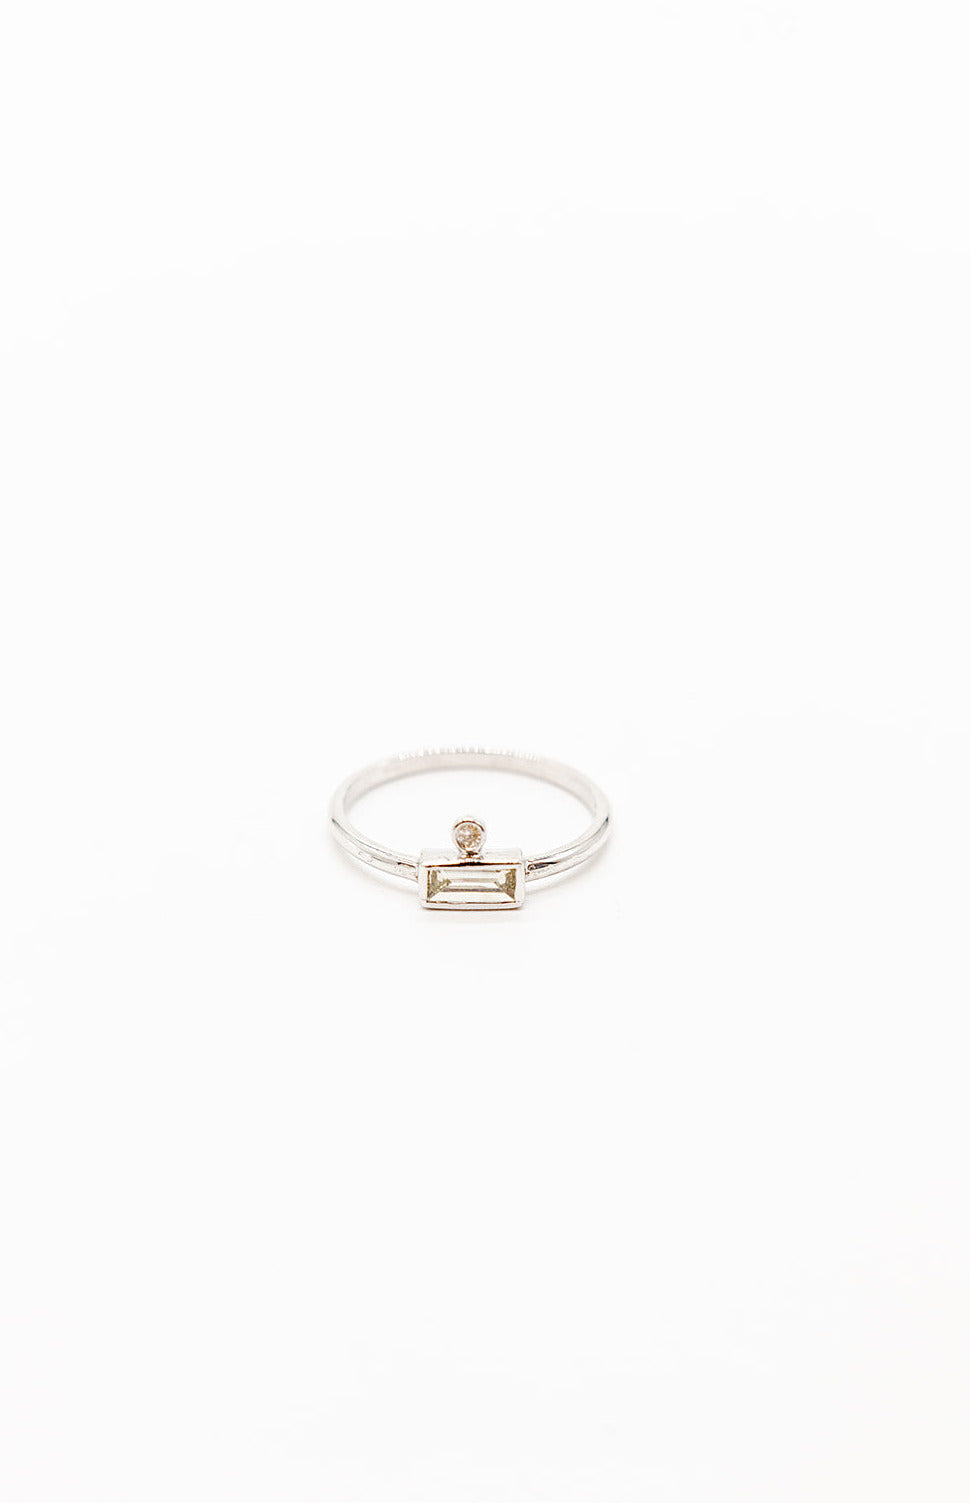 18K White Gold Diamond Baguette Ring